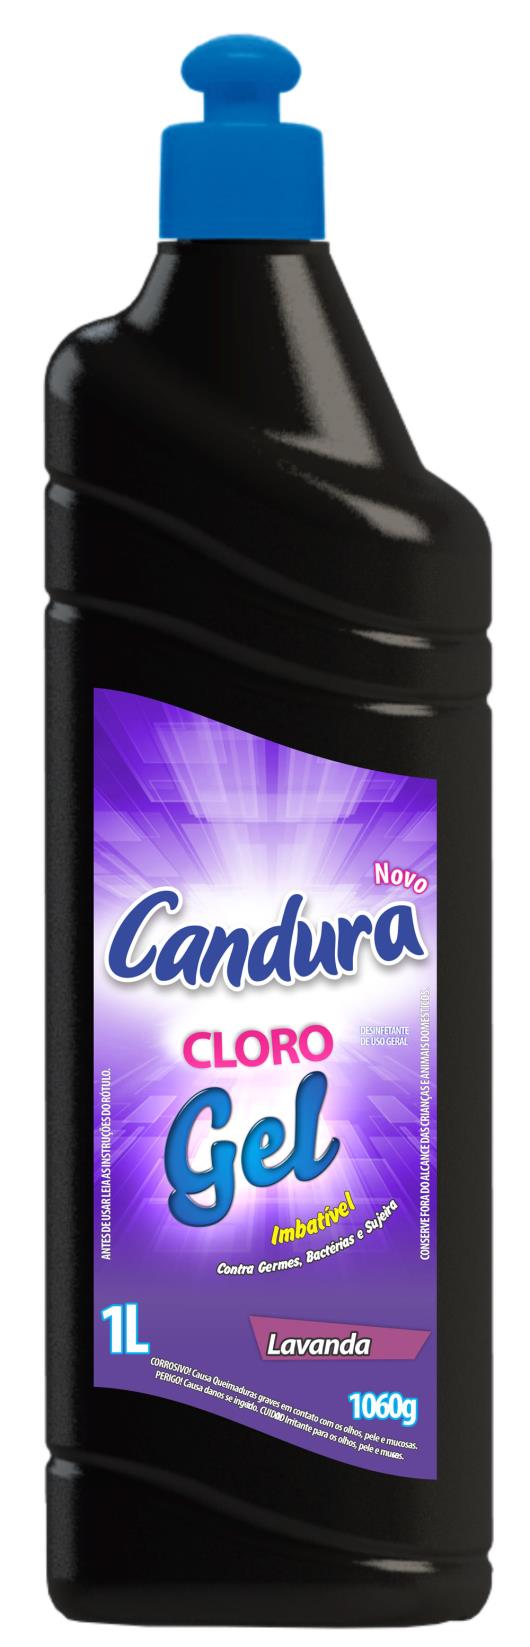 7896105500643 - CLORO CANDURA 1L GEL LAVANDA